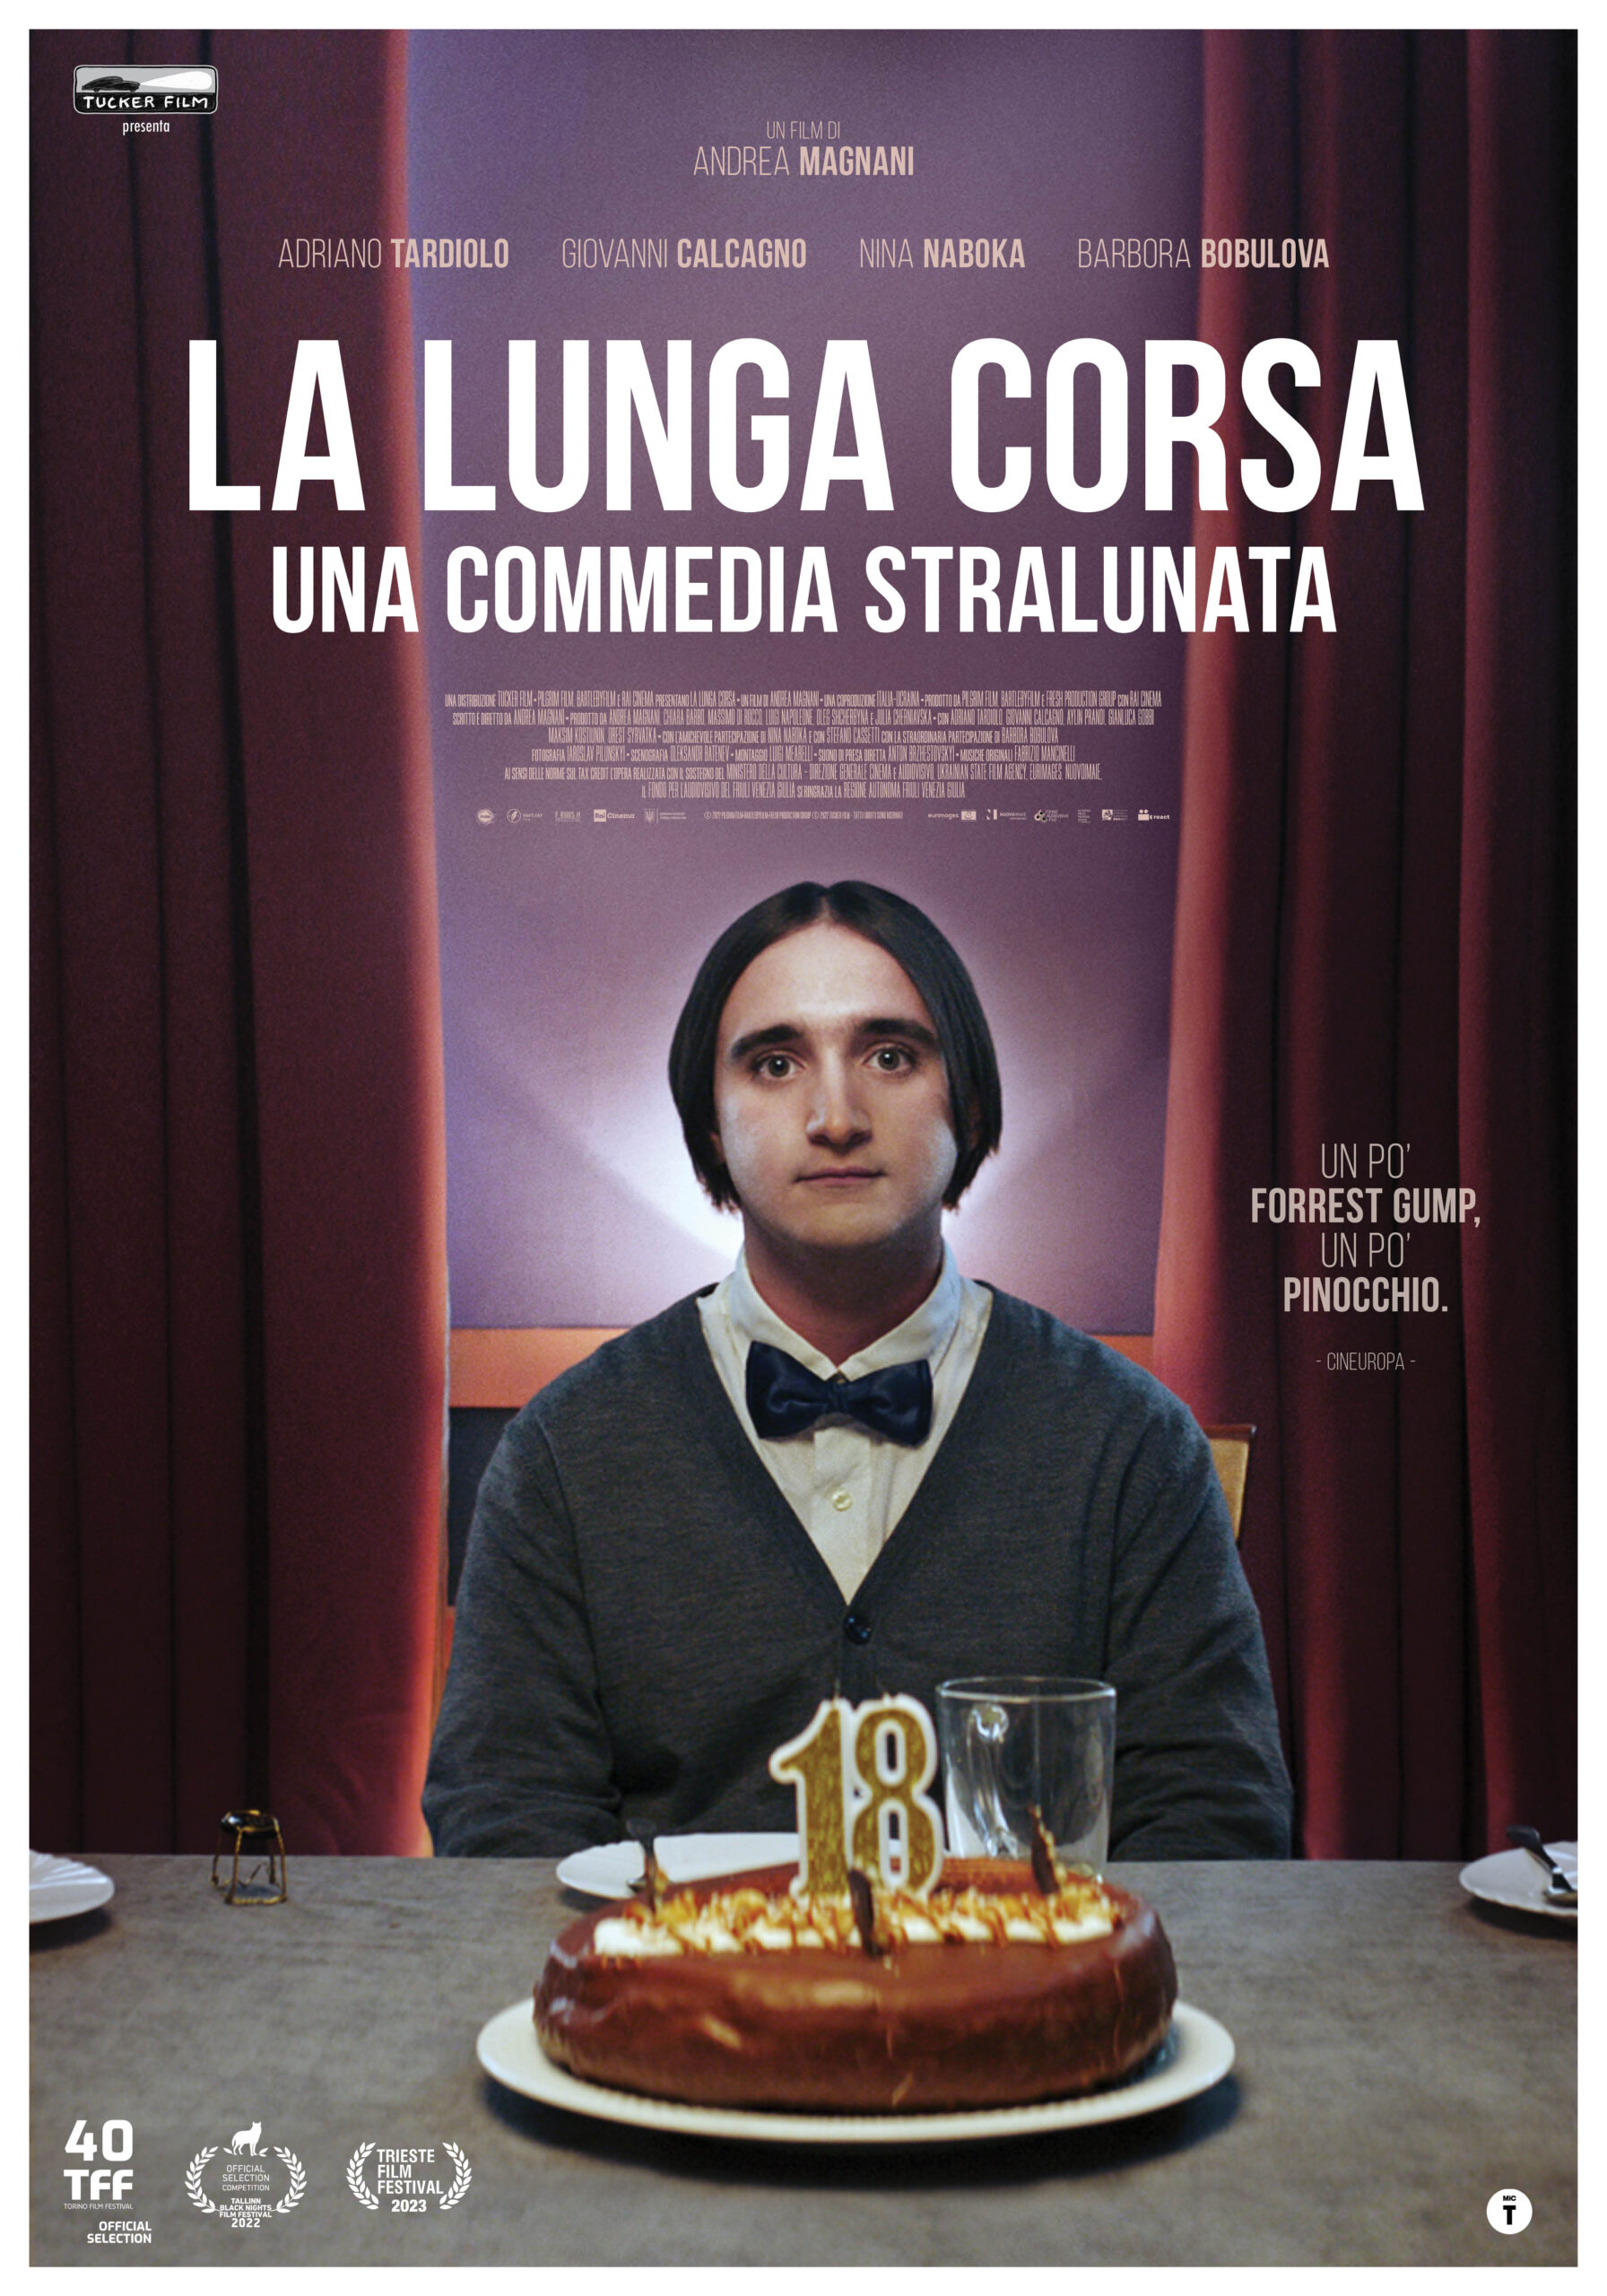 "La lunga corsa" al cinema dal 24 agosto, la nuova commedia stralunata di Andrea Magnani!